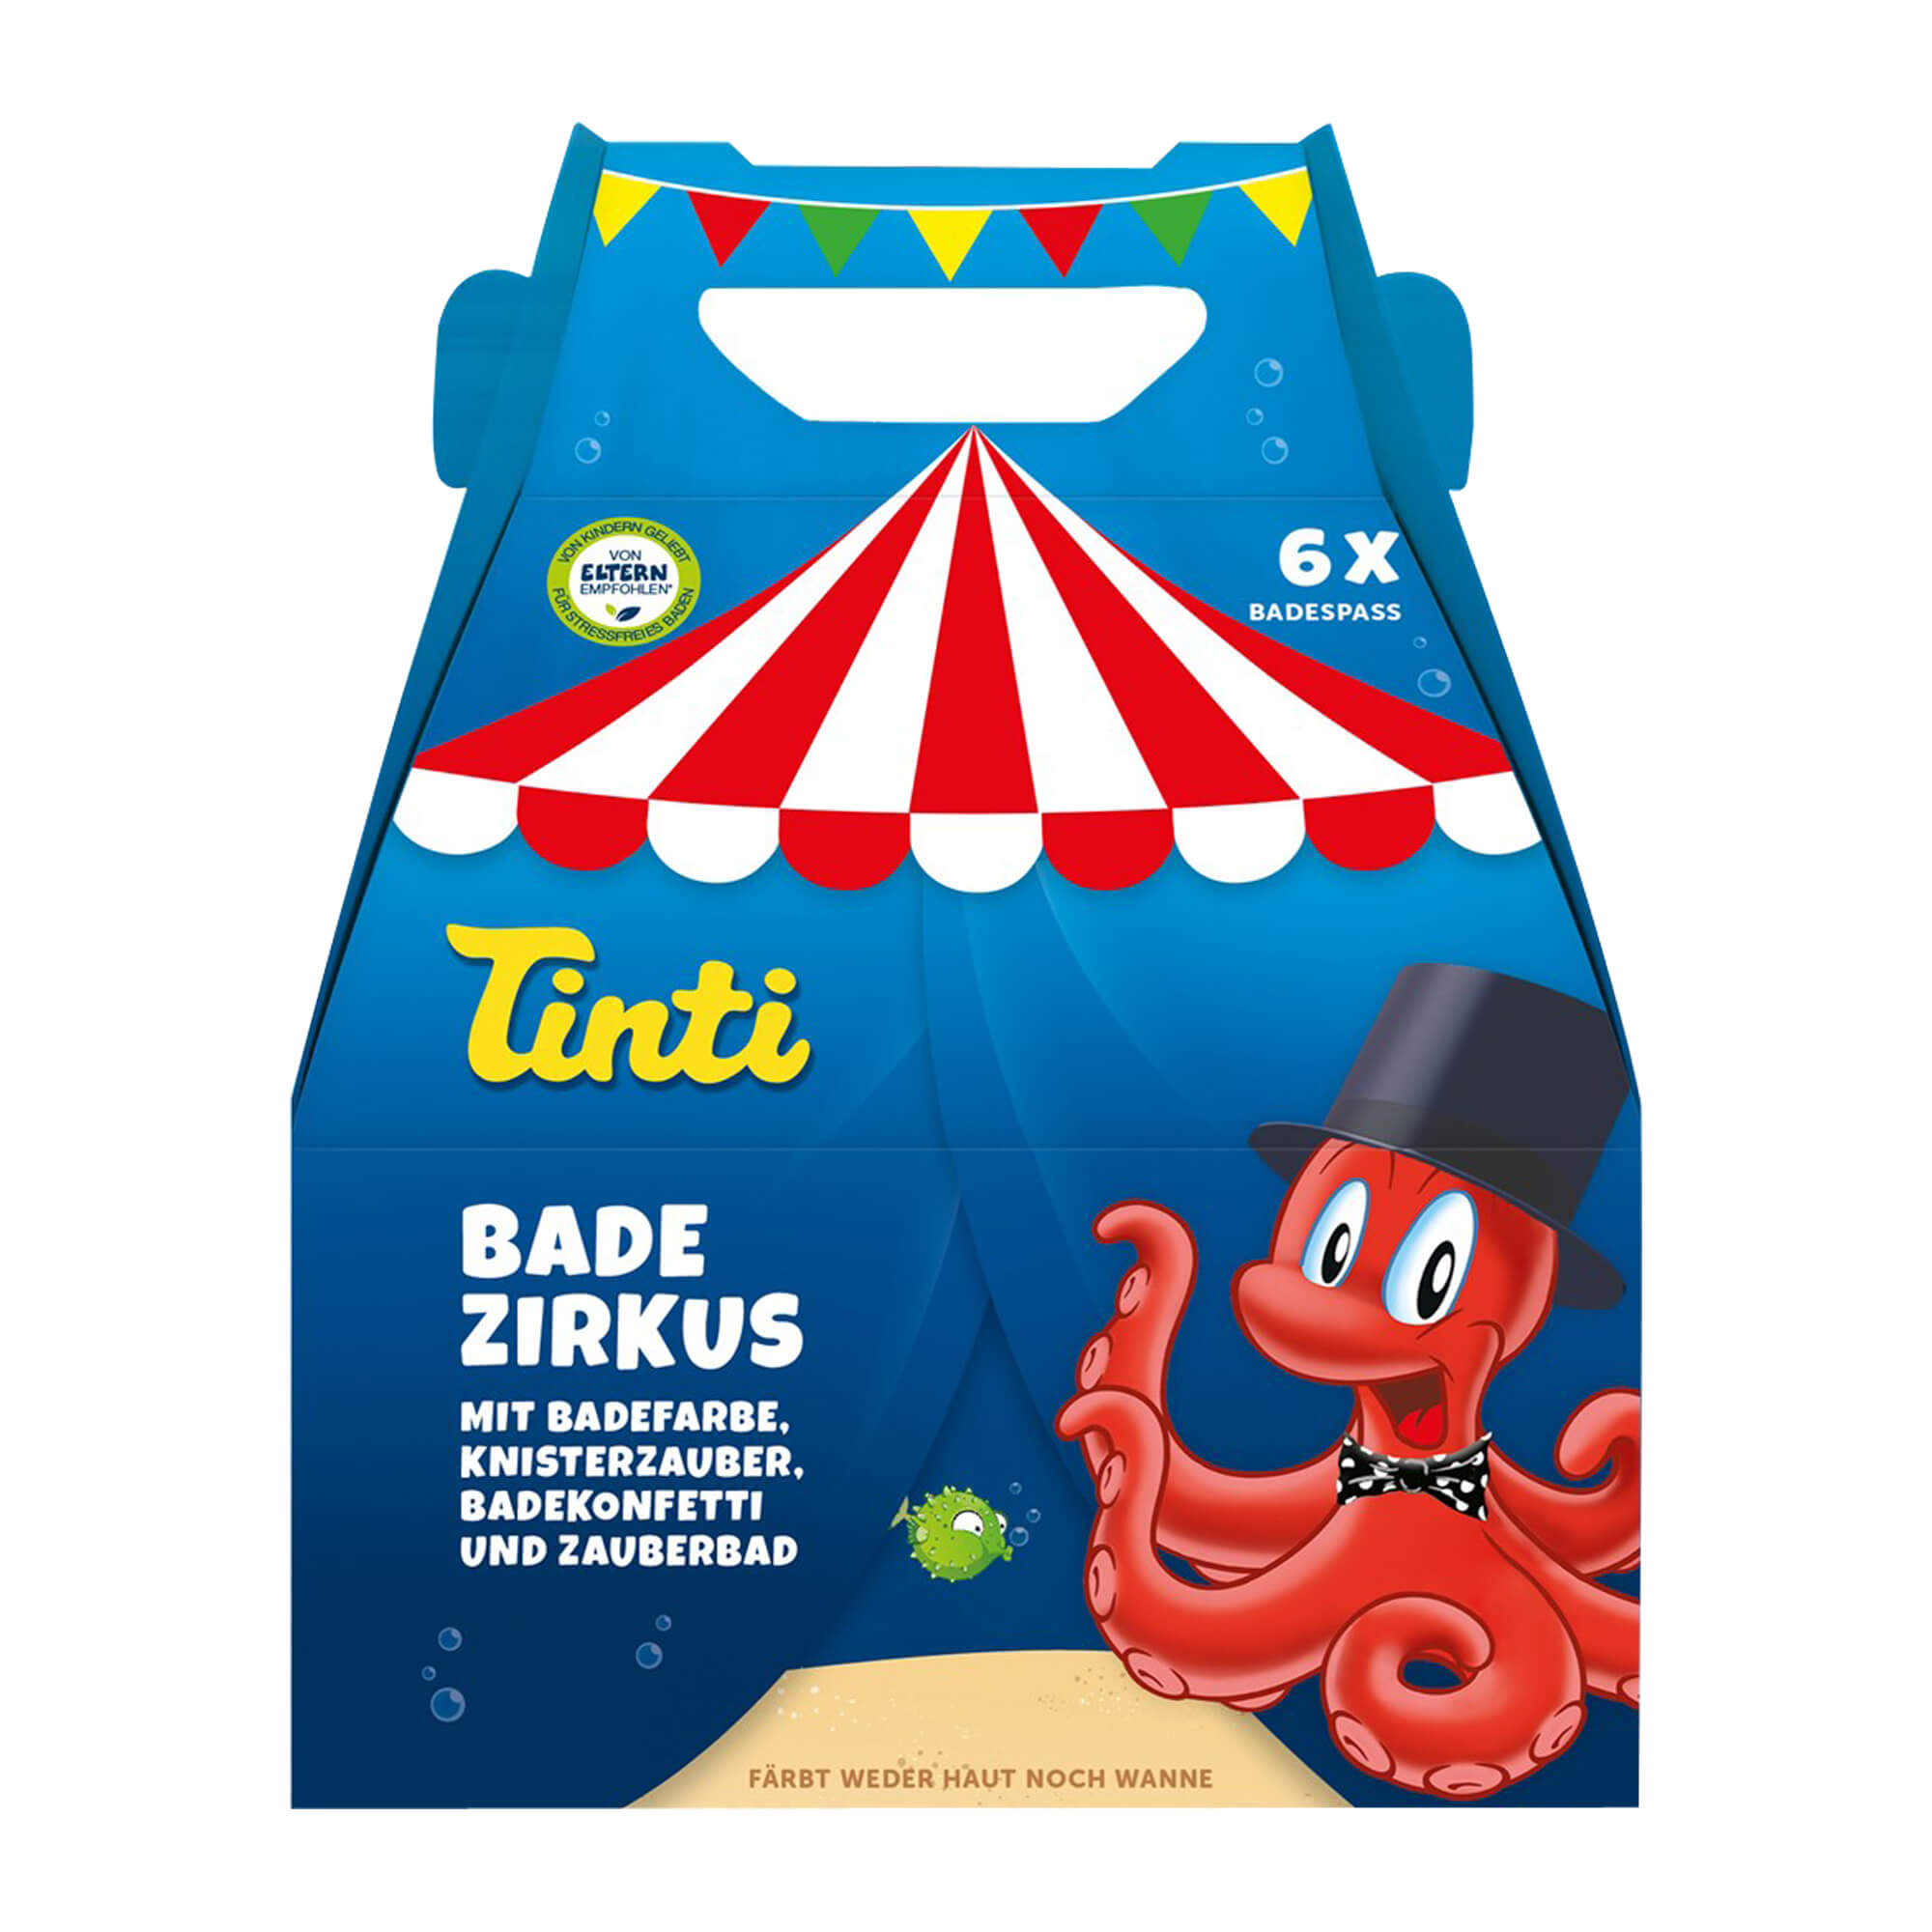 Spiel- und Badespaß an kalten Wintertagen mit dem vielseitigen Tinti Bade Zirkus.